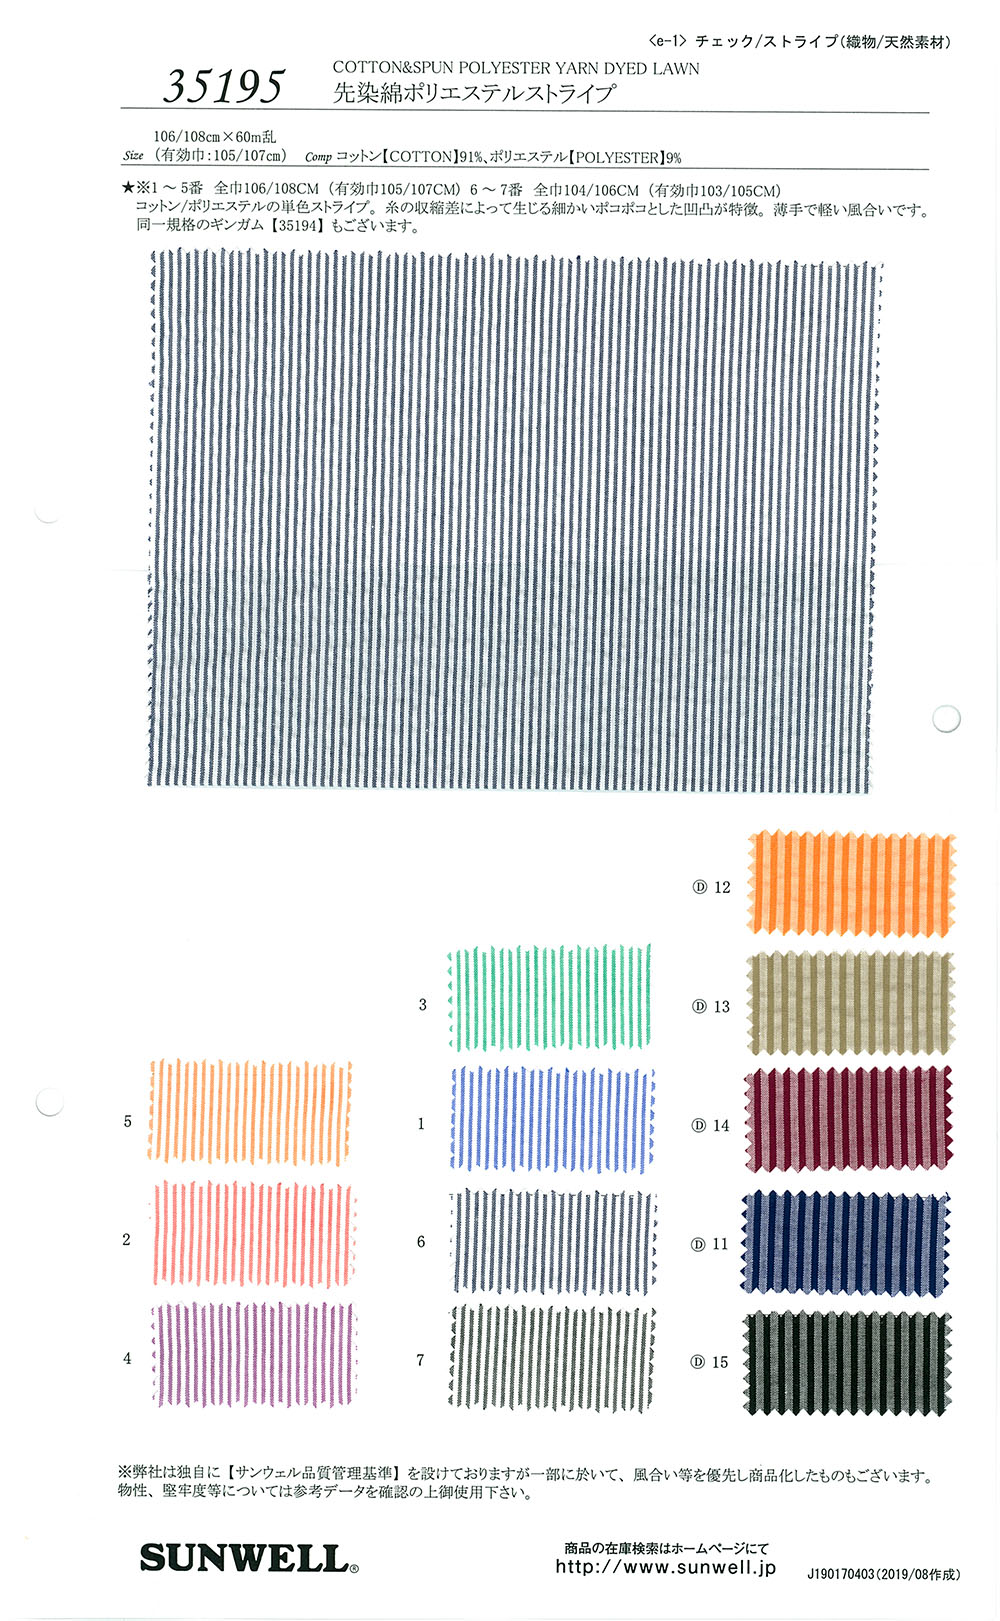 35195 Garngefärbter Baumwoll-Polyester-Streifen[Textilgewebe] SUNWELL